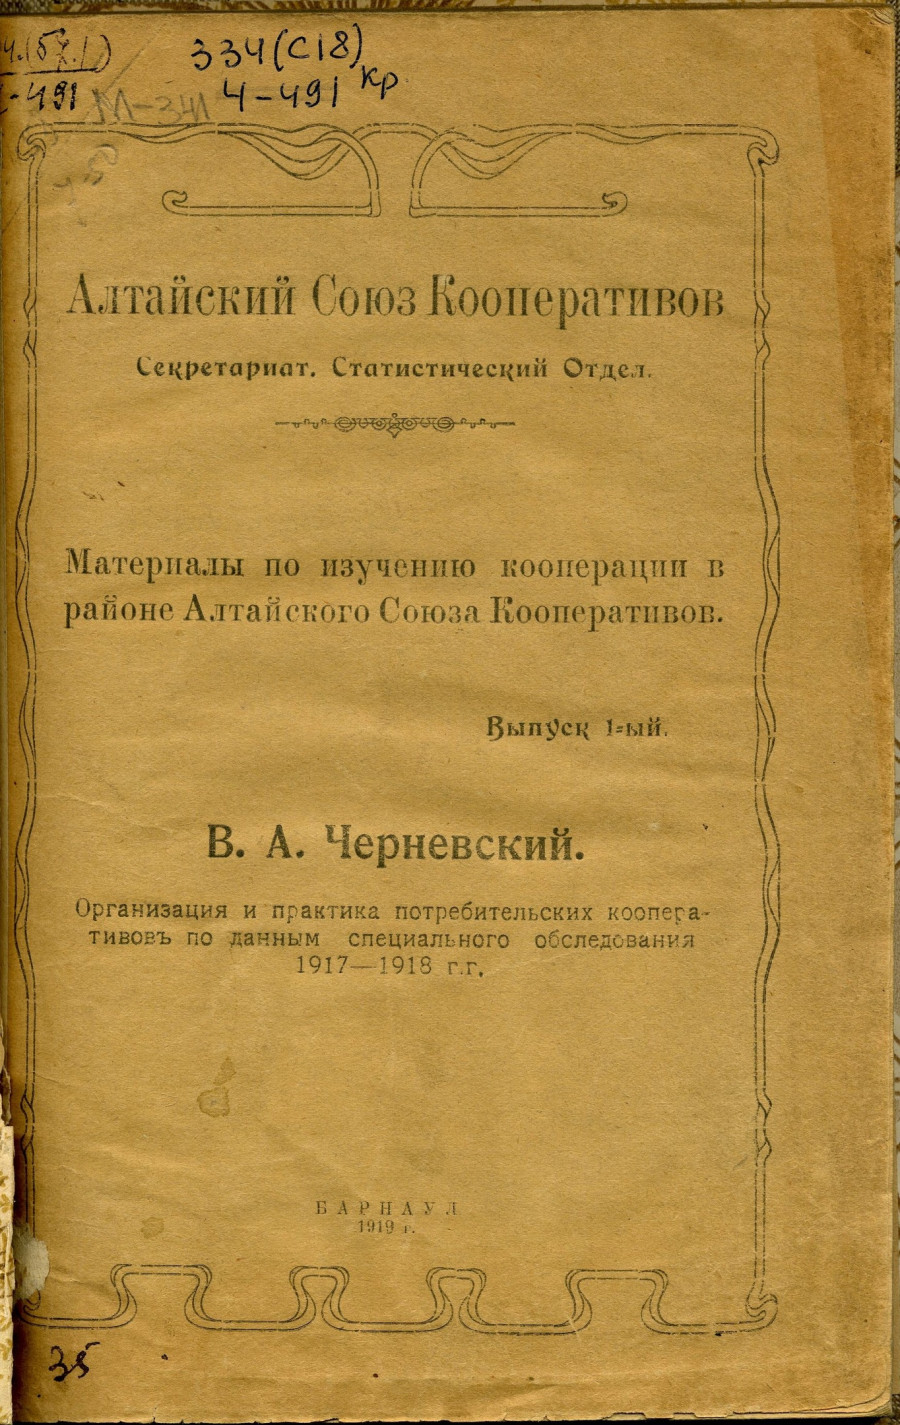 Материалы по изучению кооперации в районе Алтайского Союза Кооперативов, издание 1919 года.